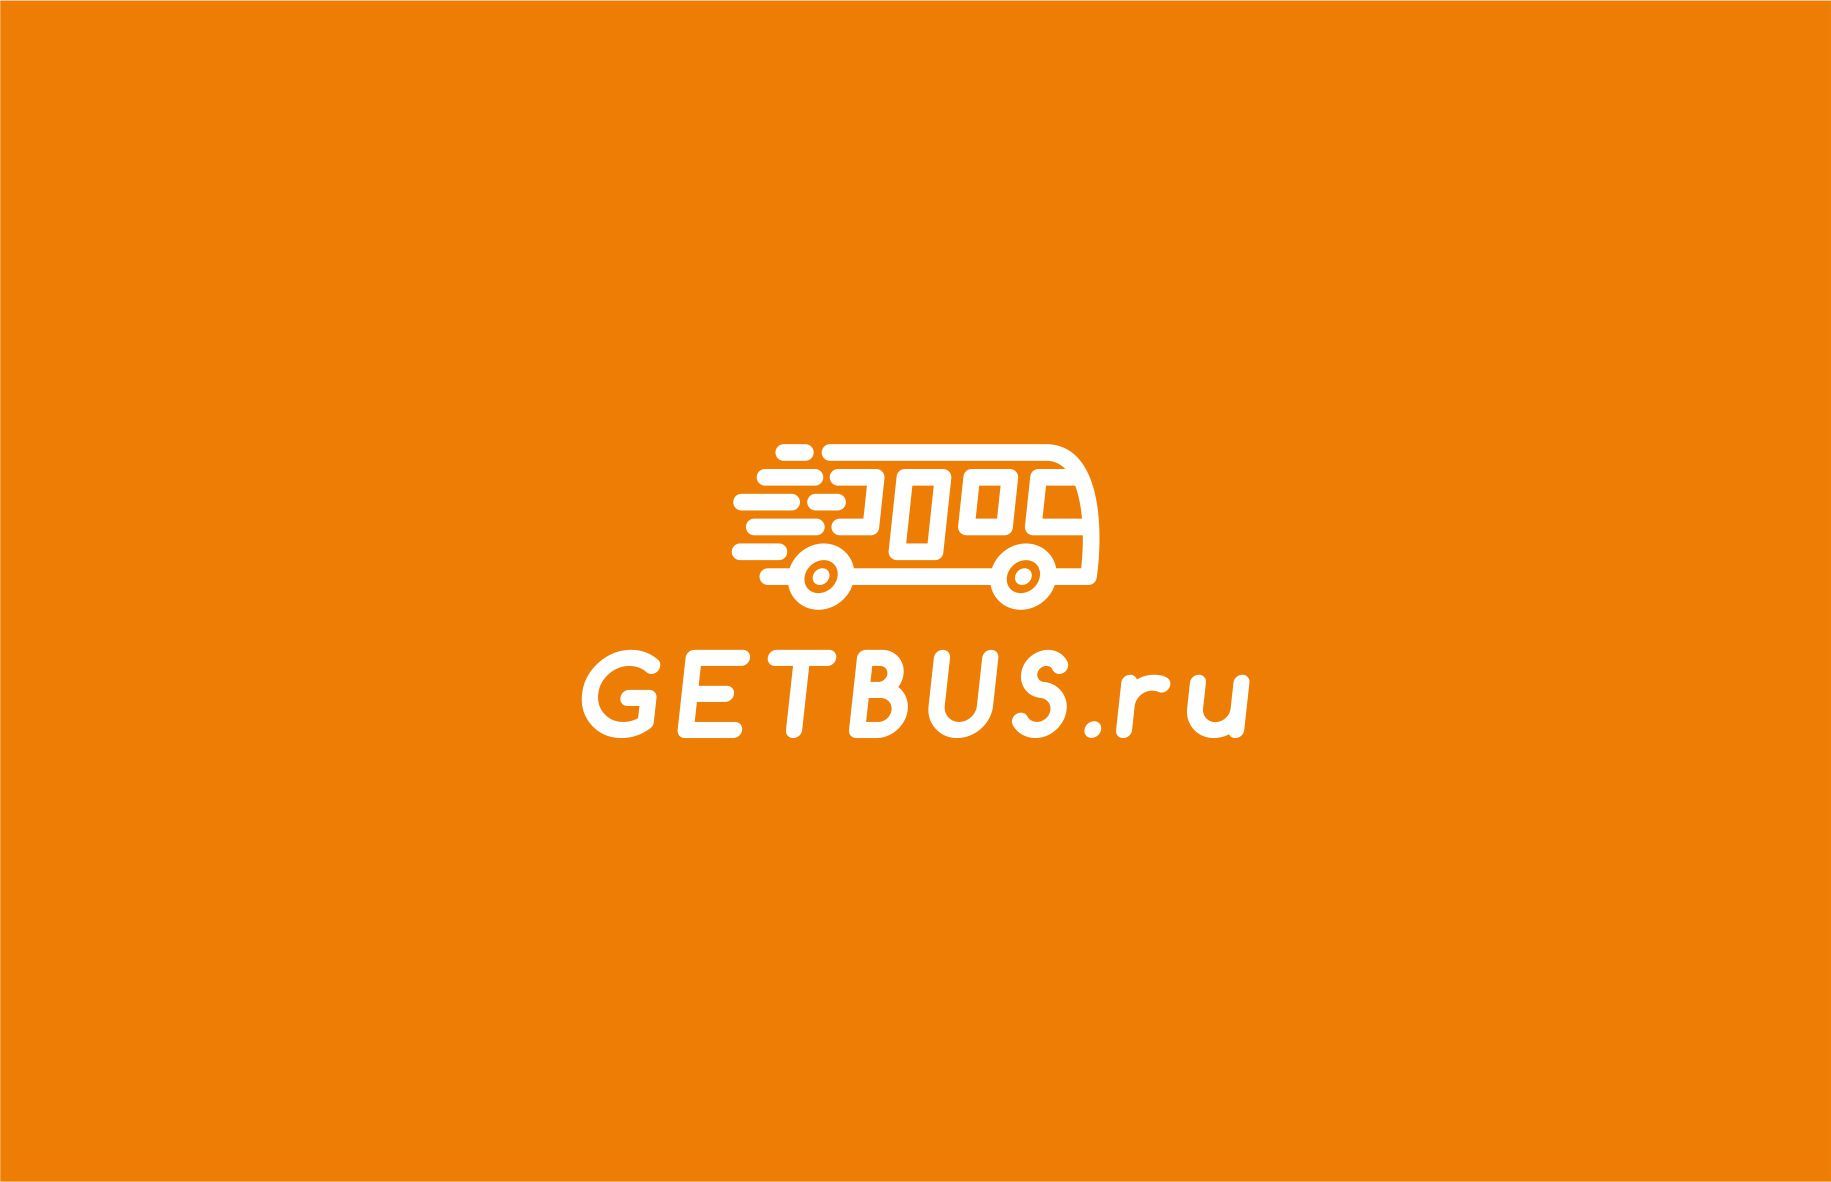 Логотип для Getbus.ru - дизайнер graphin4ik